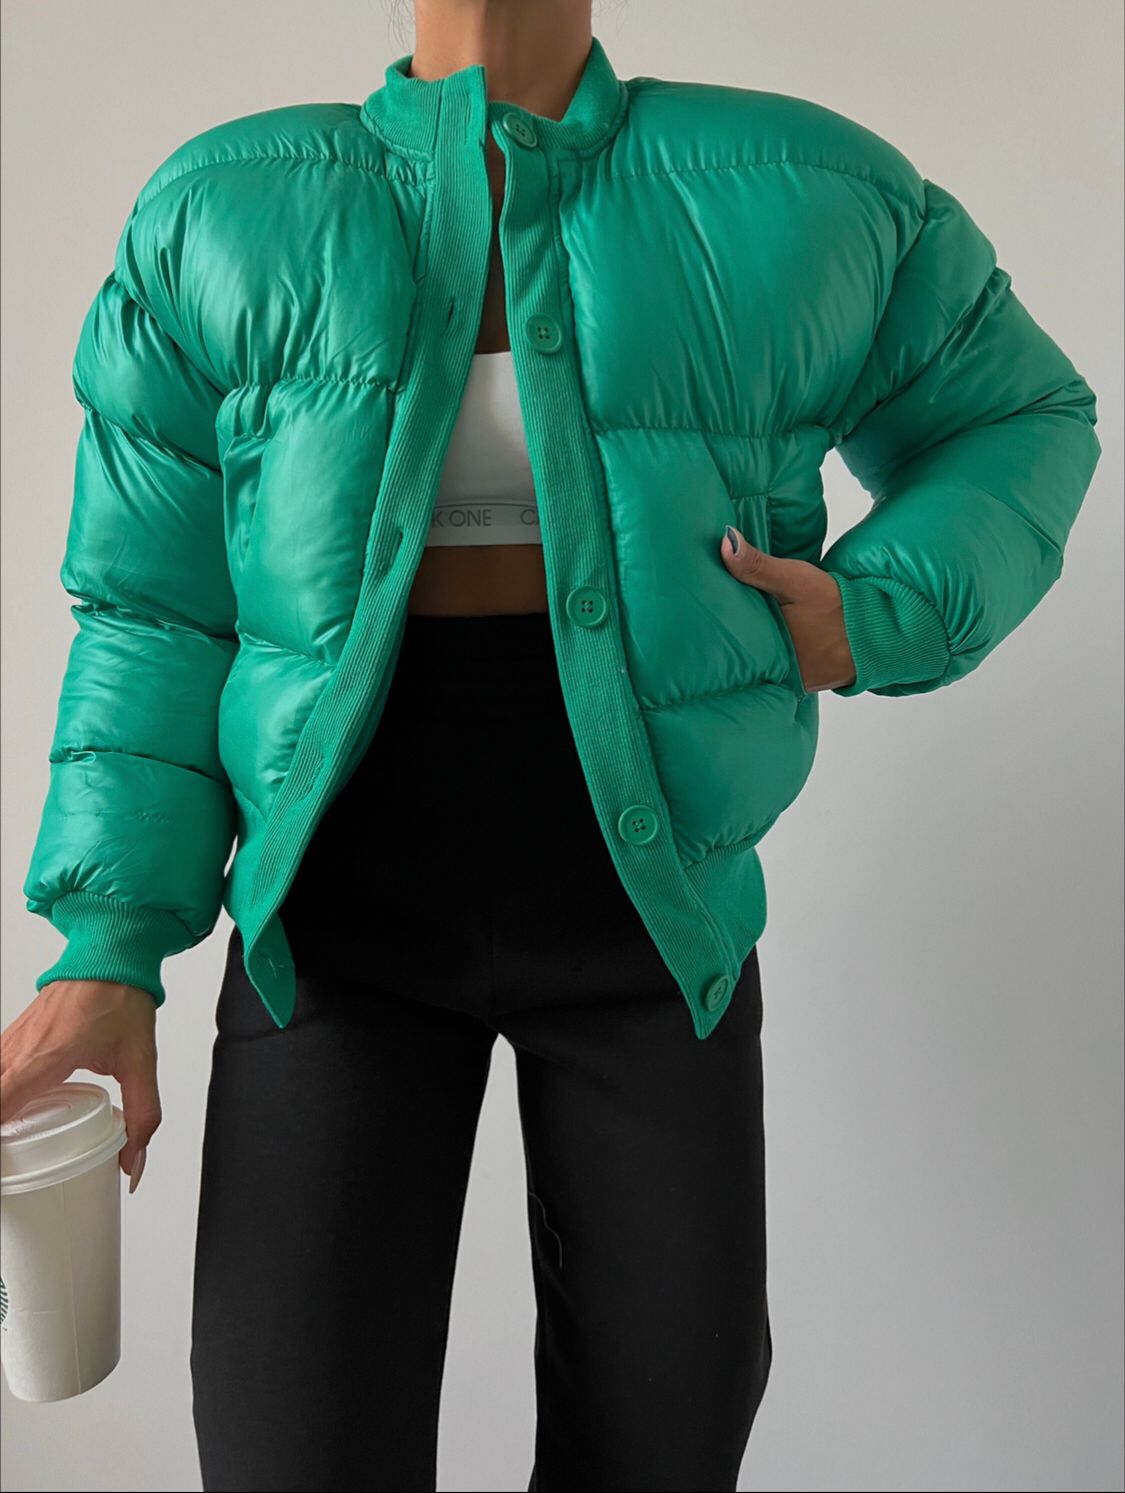 Дамско яке DARA  https://bvseductive.com/products/women-s-jackets-dara-3  модерно дамско яке в зелен цвят изработено от мека, топла и приятна материя кройка с дължина до кръста и ръкави с ластик в края супер предложение за Вашата визия в студените дни чудесен избор за гардероба на всяка модерна дама